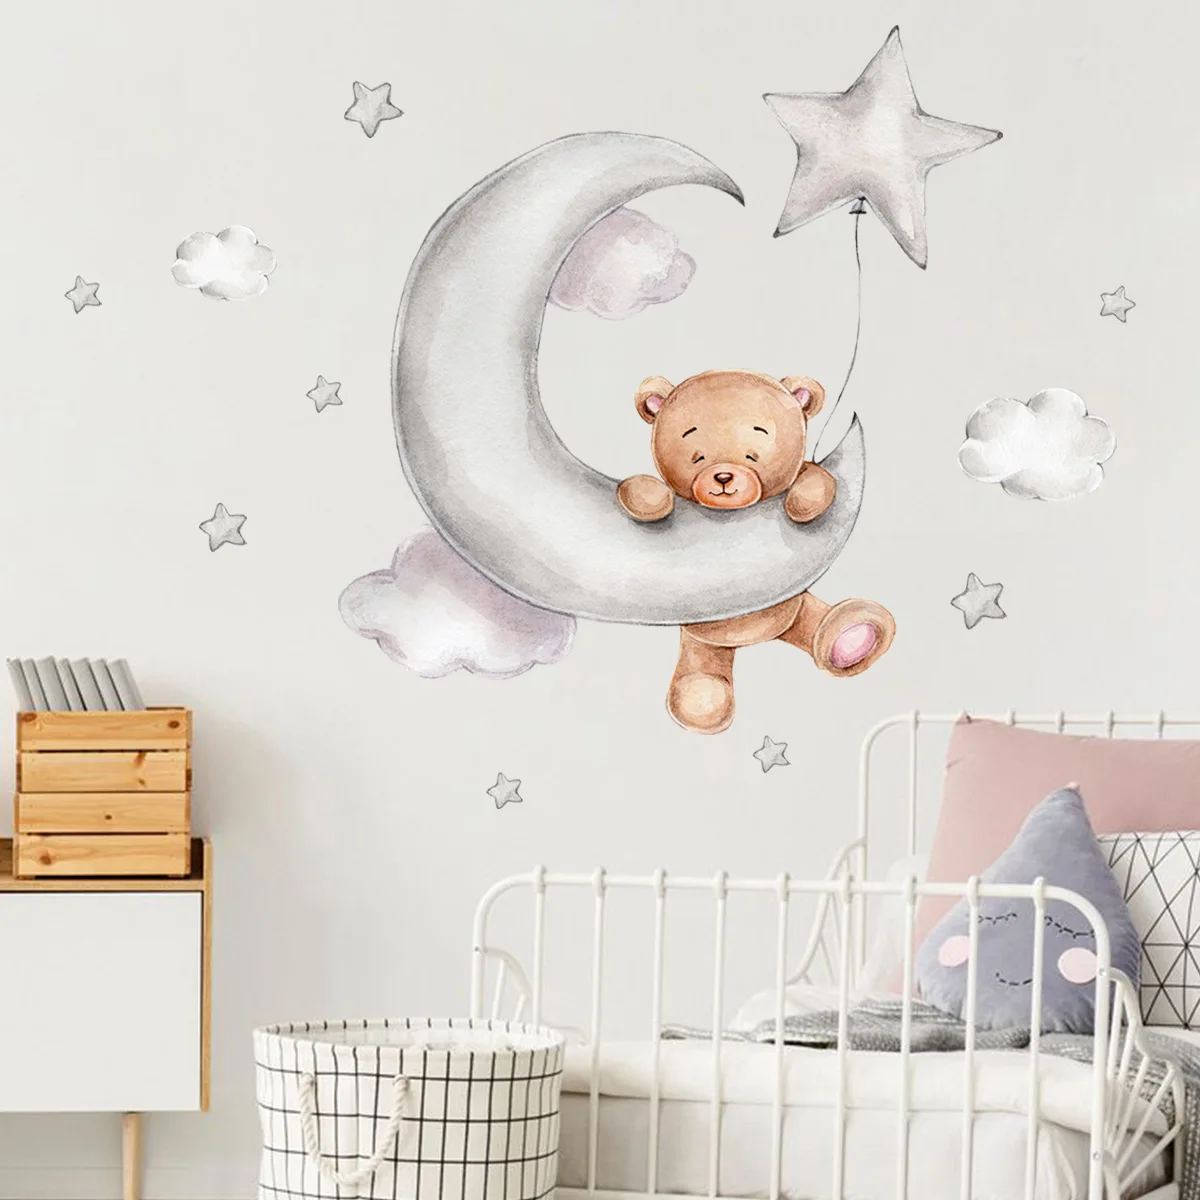 BABY Bear Moon Star Cloud Wall Sticker Bedroom Baby Room Cartoon Art Wall Decal 